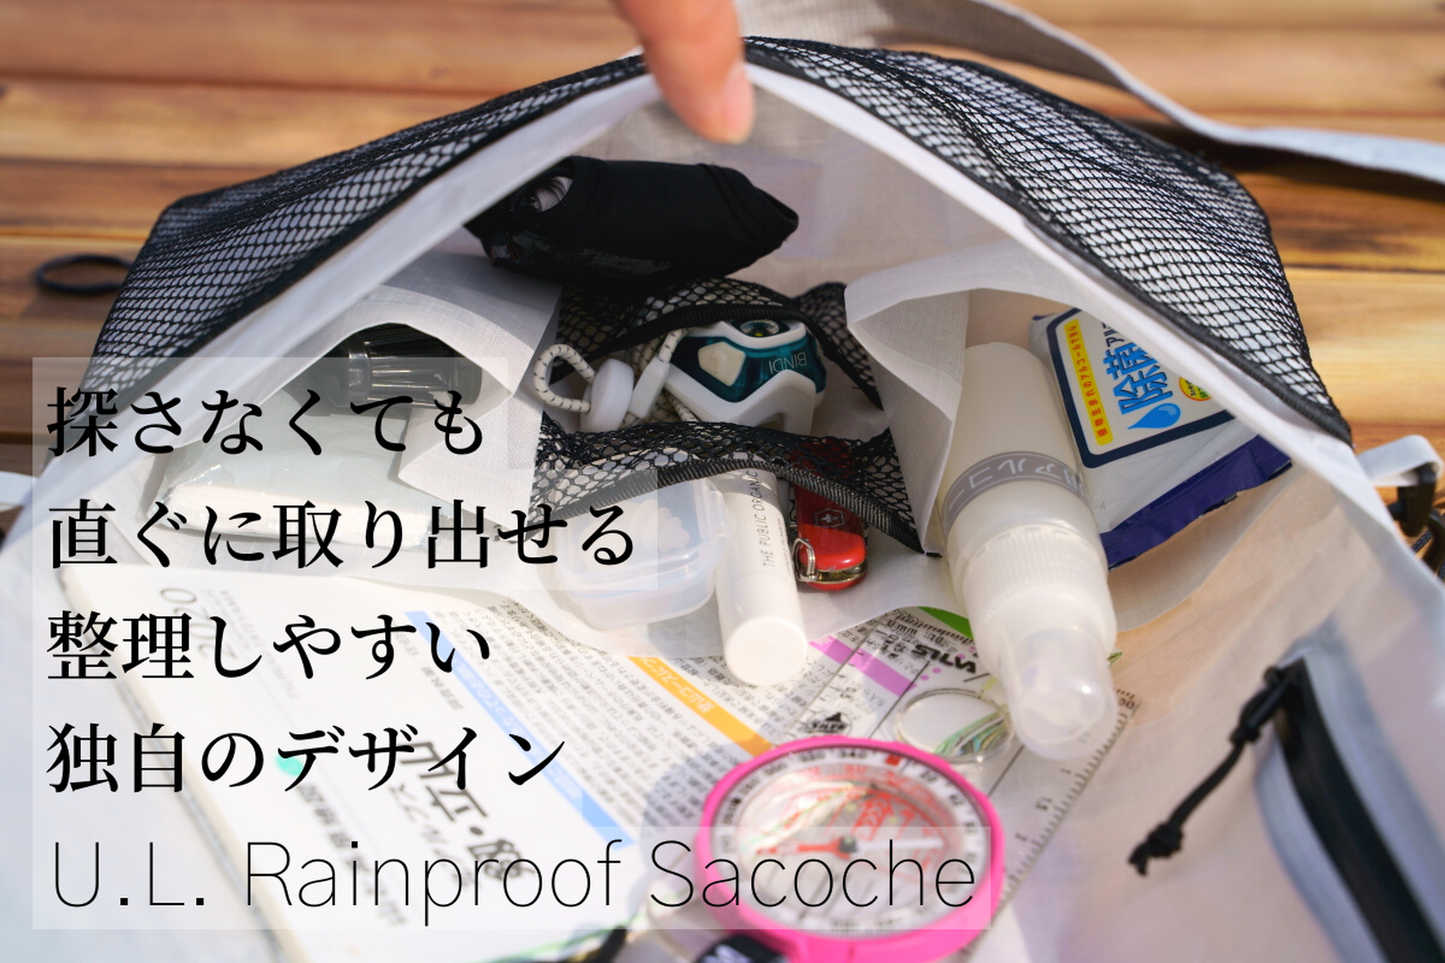 U.L. Rainproof Sacoche（ウルトラライトレインプルーフサコッシュ）